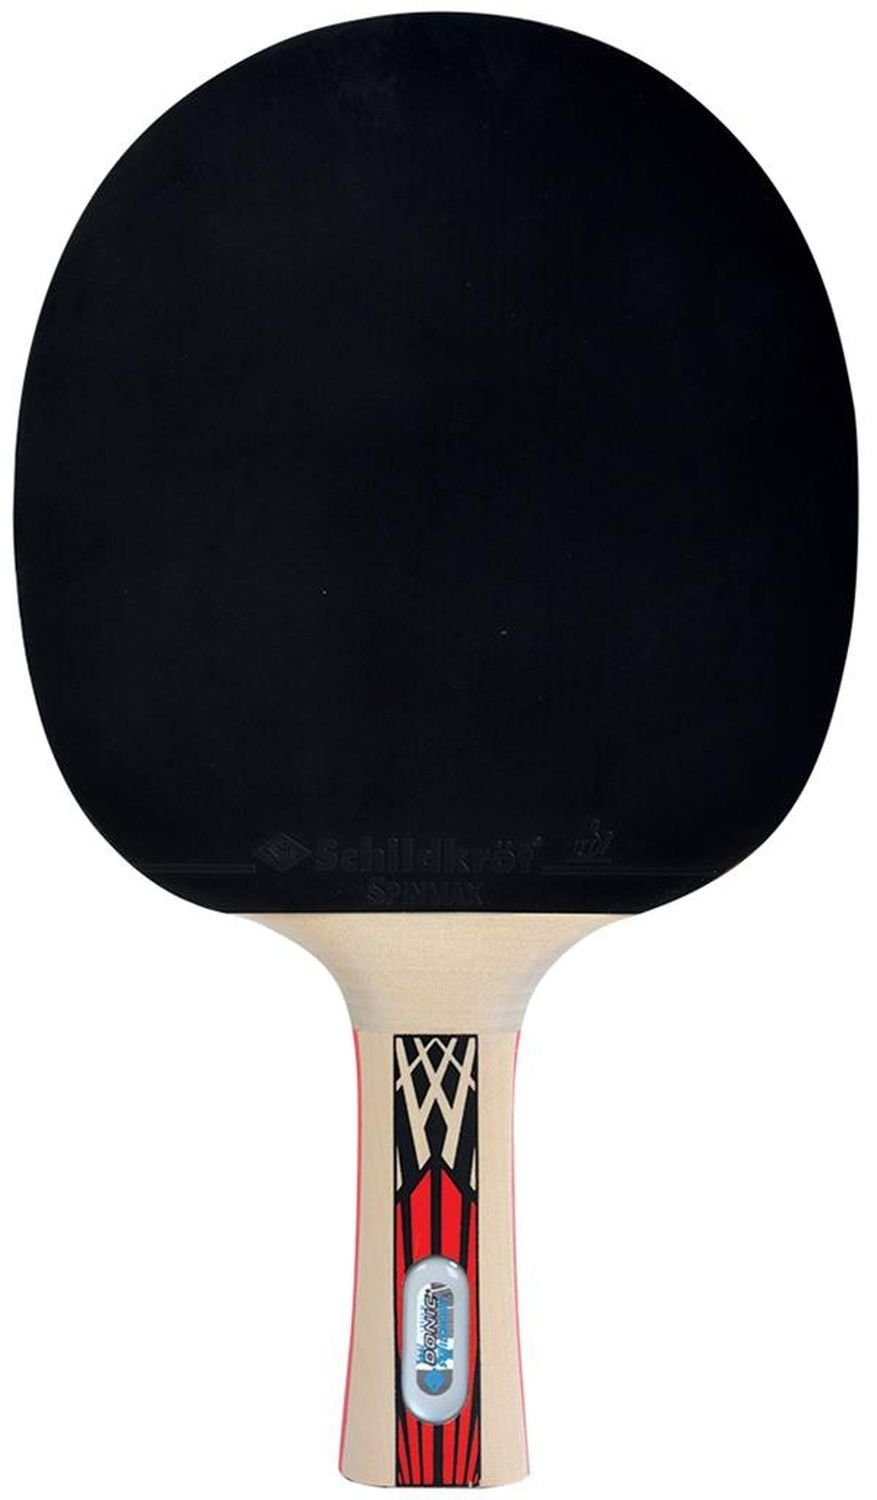 Schläger Table Tennis Donic-Schildkröt Legends Tischtennis Bat Racket 900, Tischtennisschläger